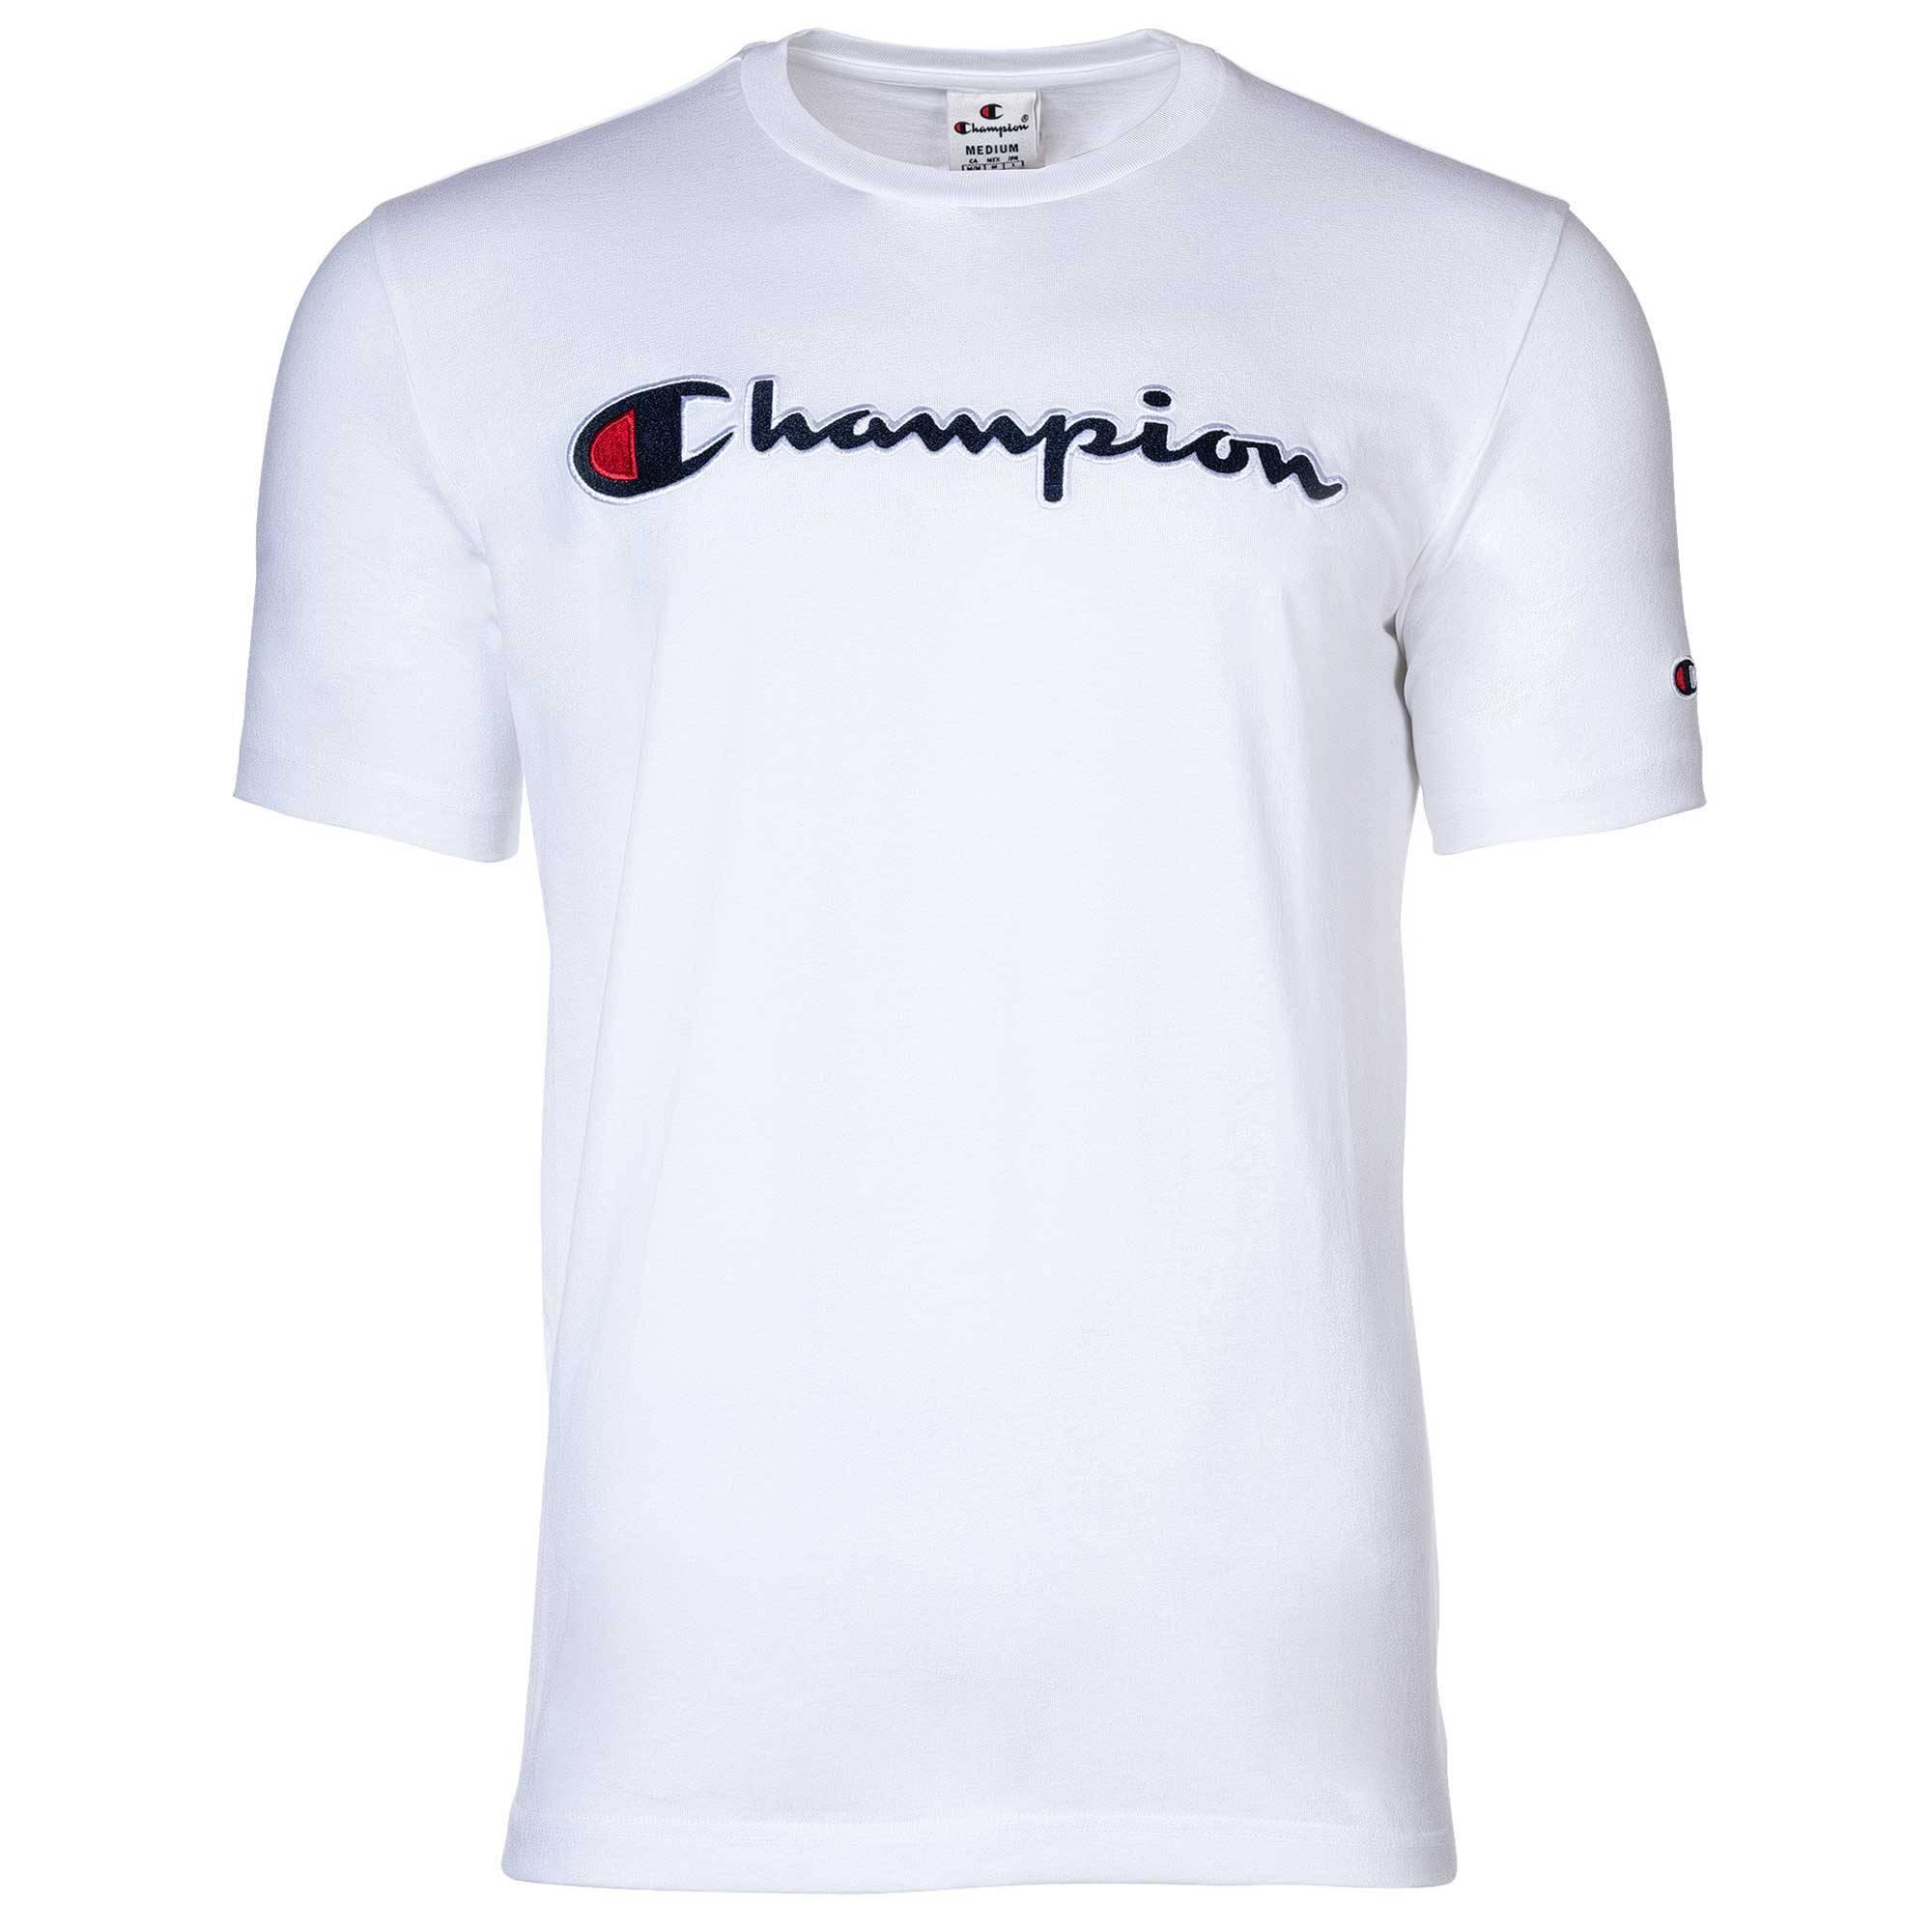 CHAMPION T-Shirt T-Shirt Herren Weiß im Online Shop von SportScheck kaufen